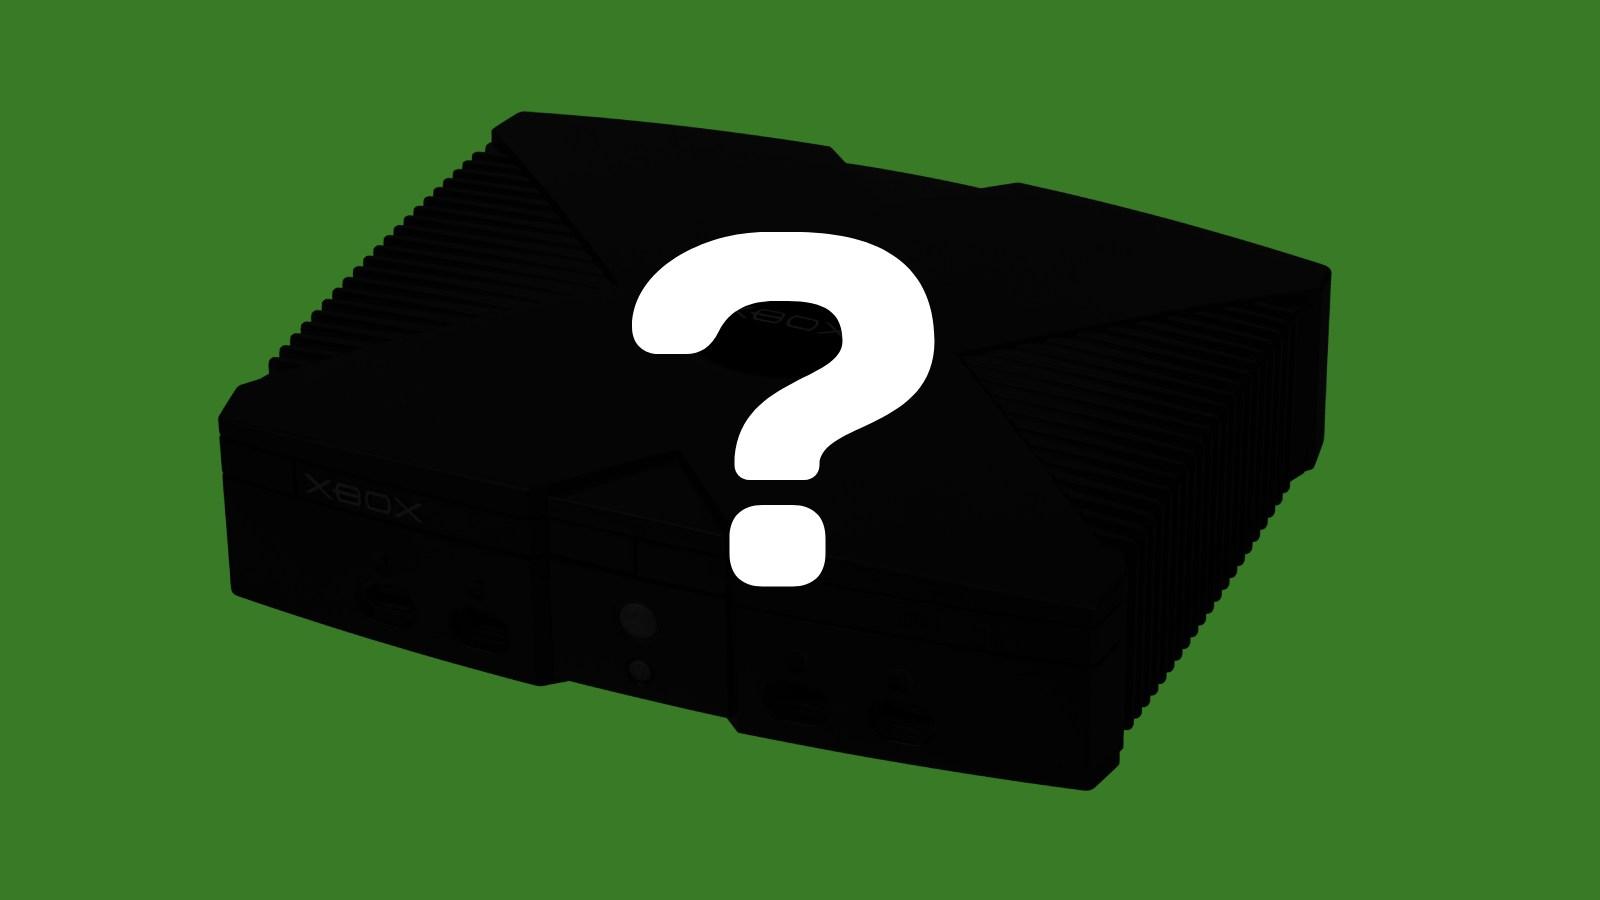 Xbox console silhouette